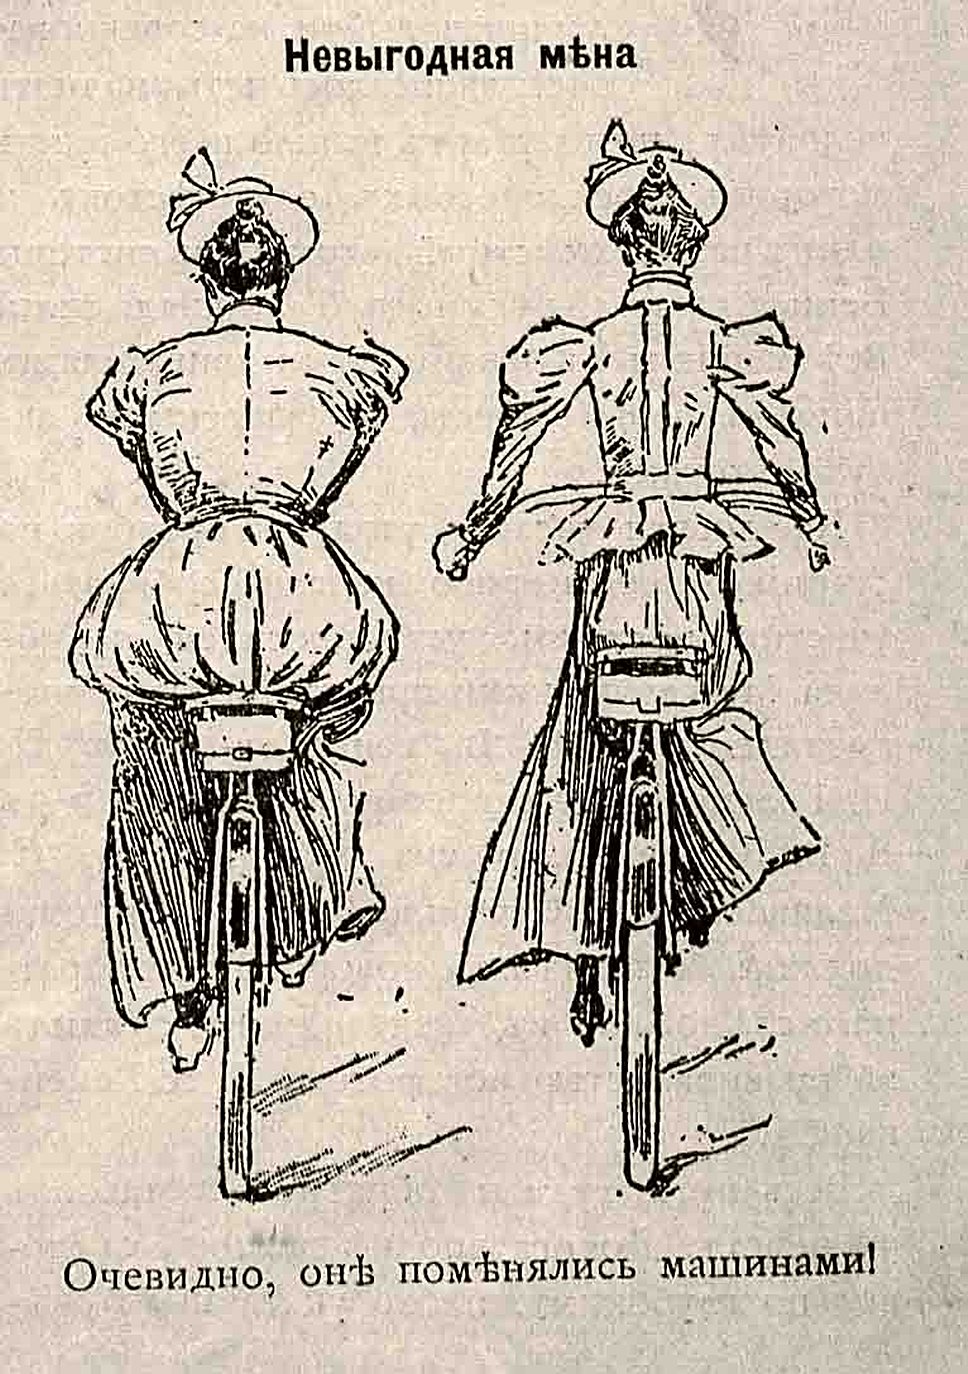 Дамский костюм для езды на велосипеде стал камнем преткновения в конце XIX века - по правилам приличия той эпохи для женщины считалось вульгарным даже немного обнажать не то что колени, а даже лодыжки, и платья все носили исключительно &quot;в пол&quot;. Спорт, к которому относилась и езда на велосипеде, естественно, свел на нет это буржуазное пуританство.